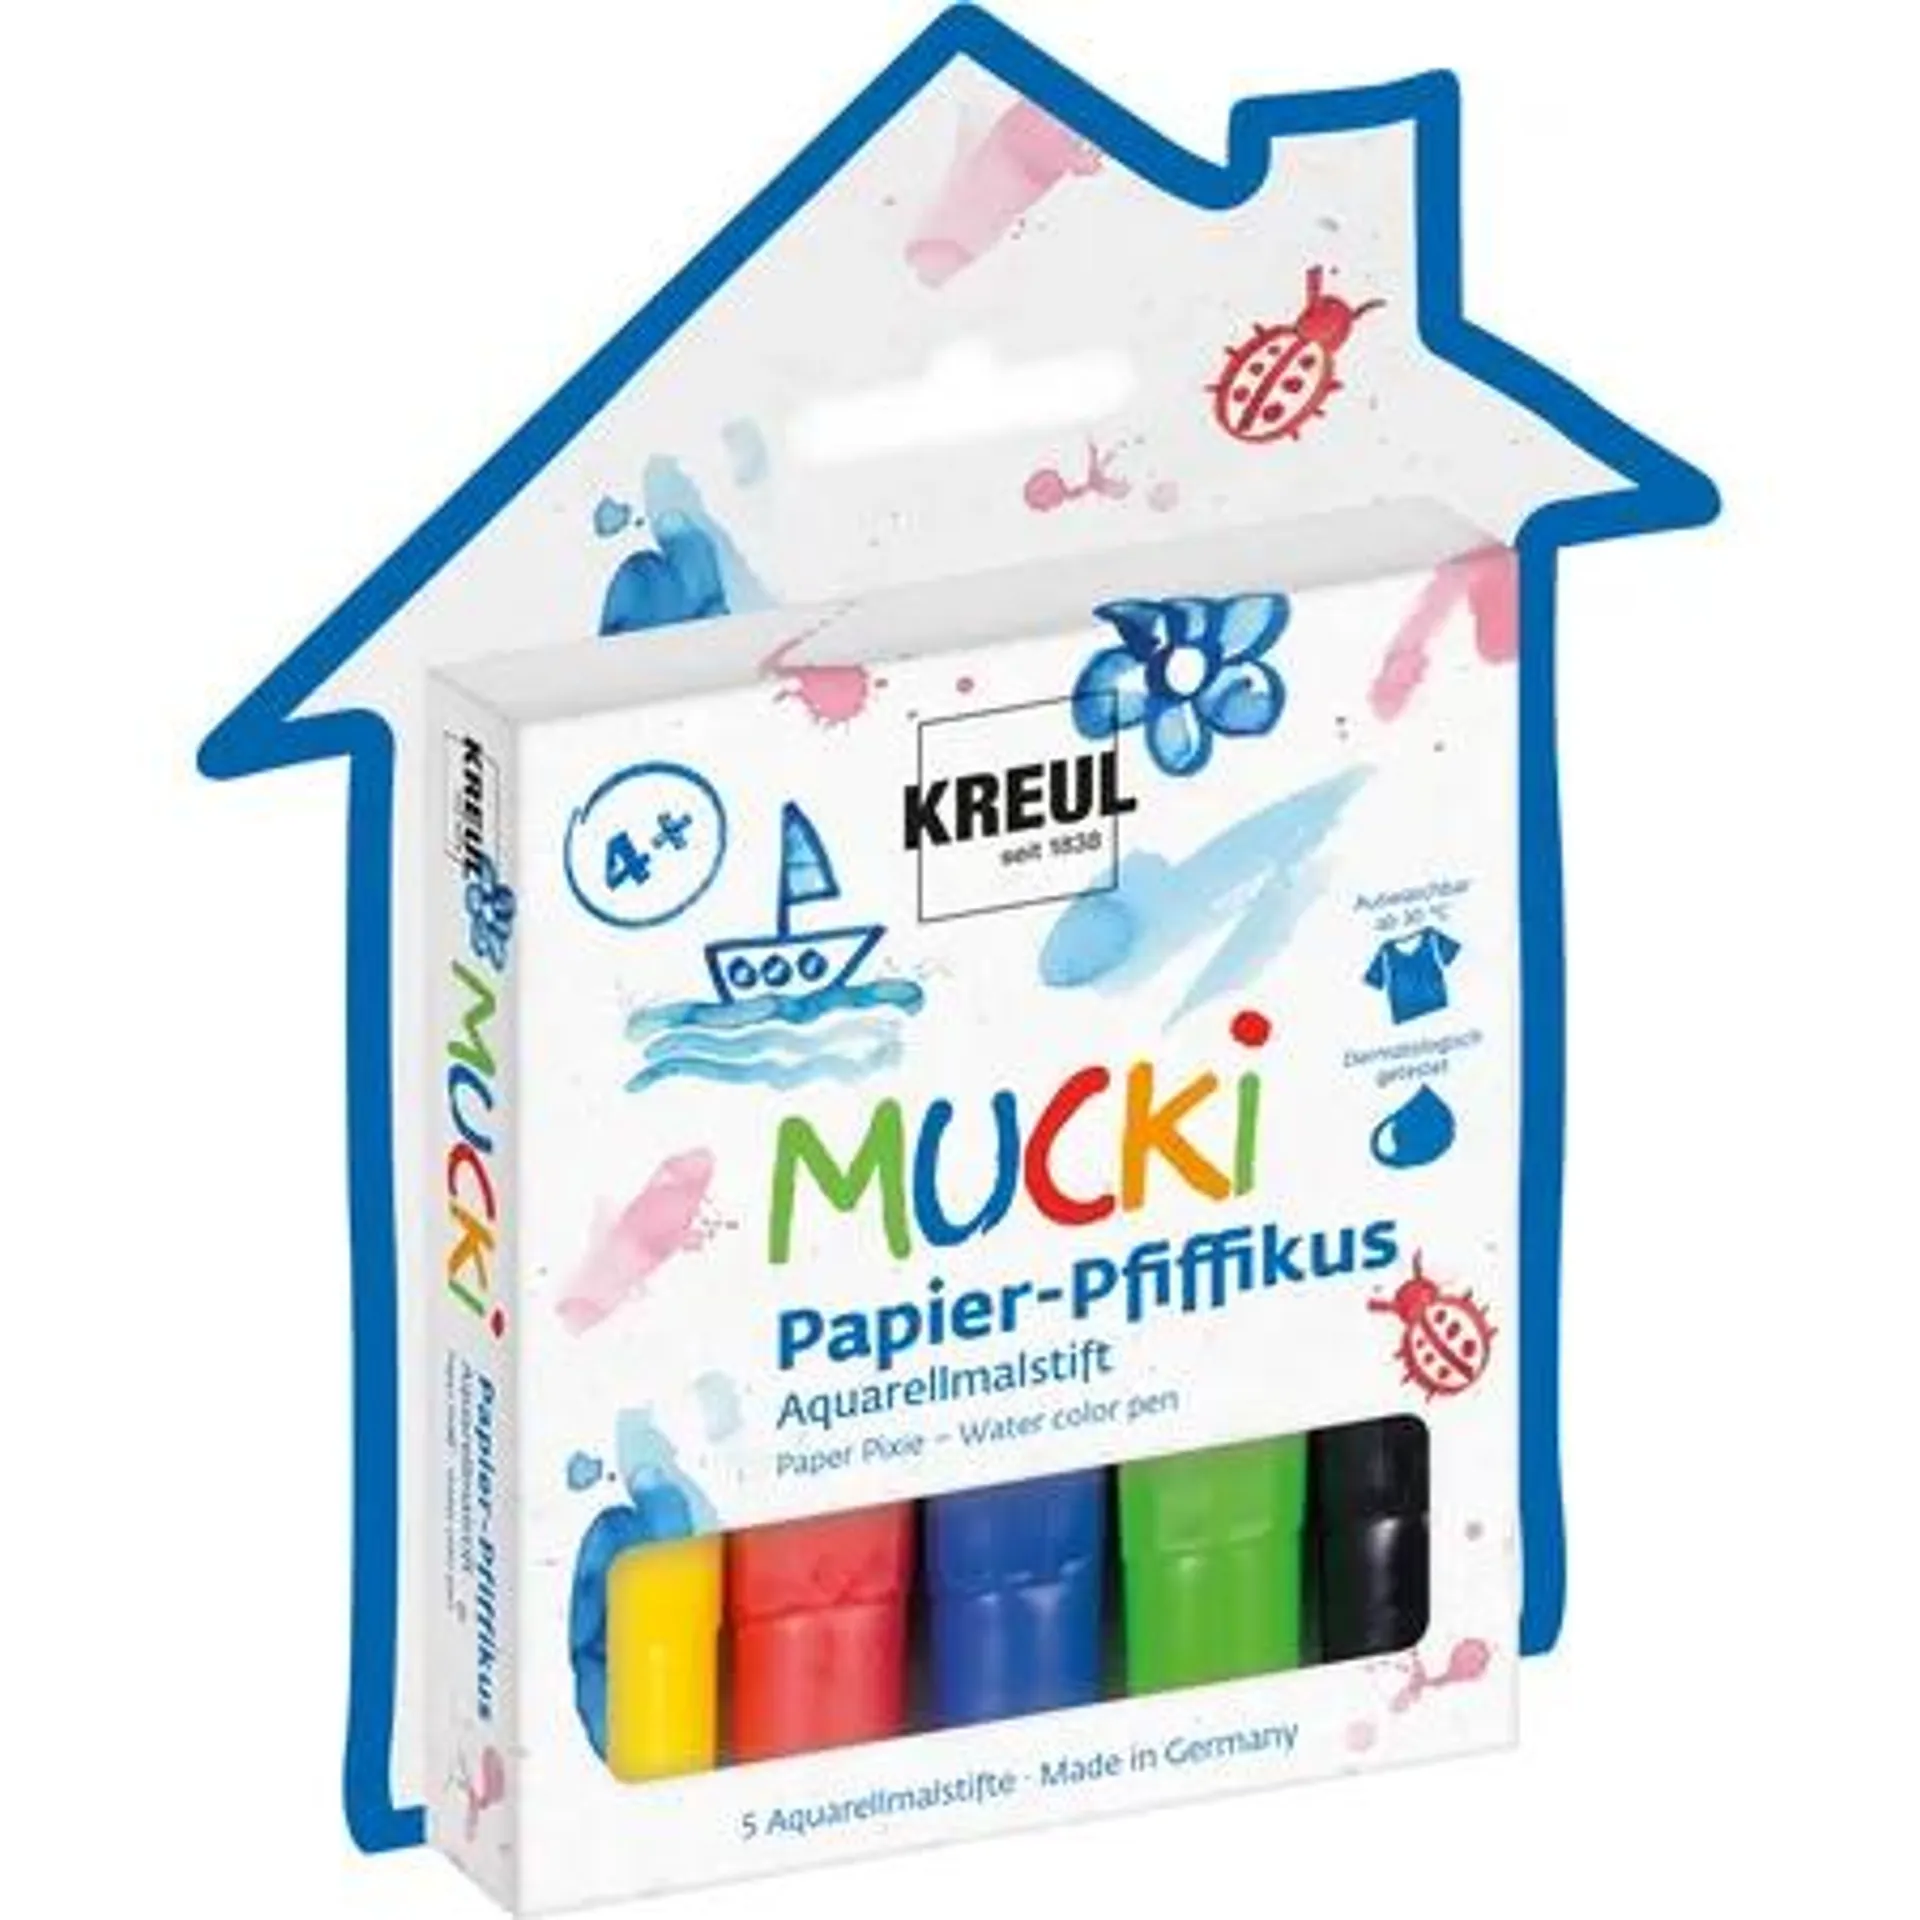 MUCKI Papier Pfiffikus, Aquarellmalstifte für Kinder, 5 Stifte